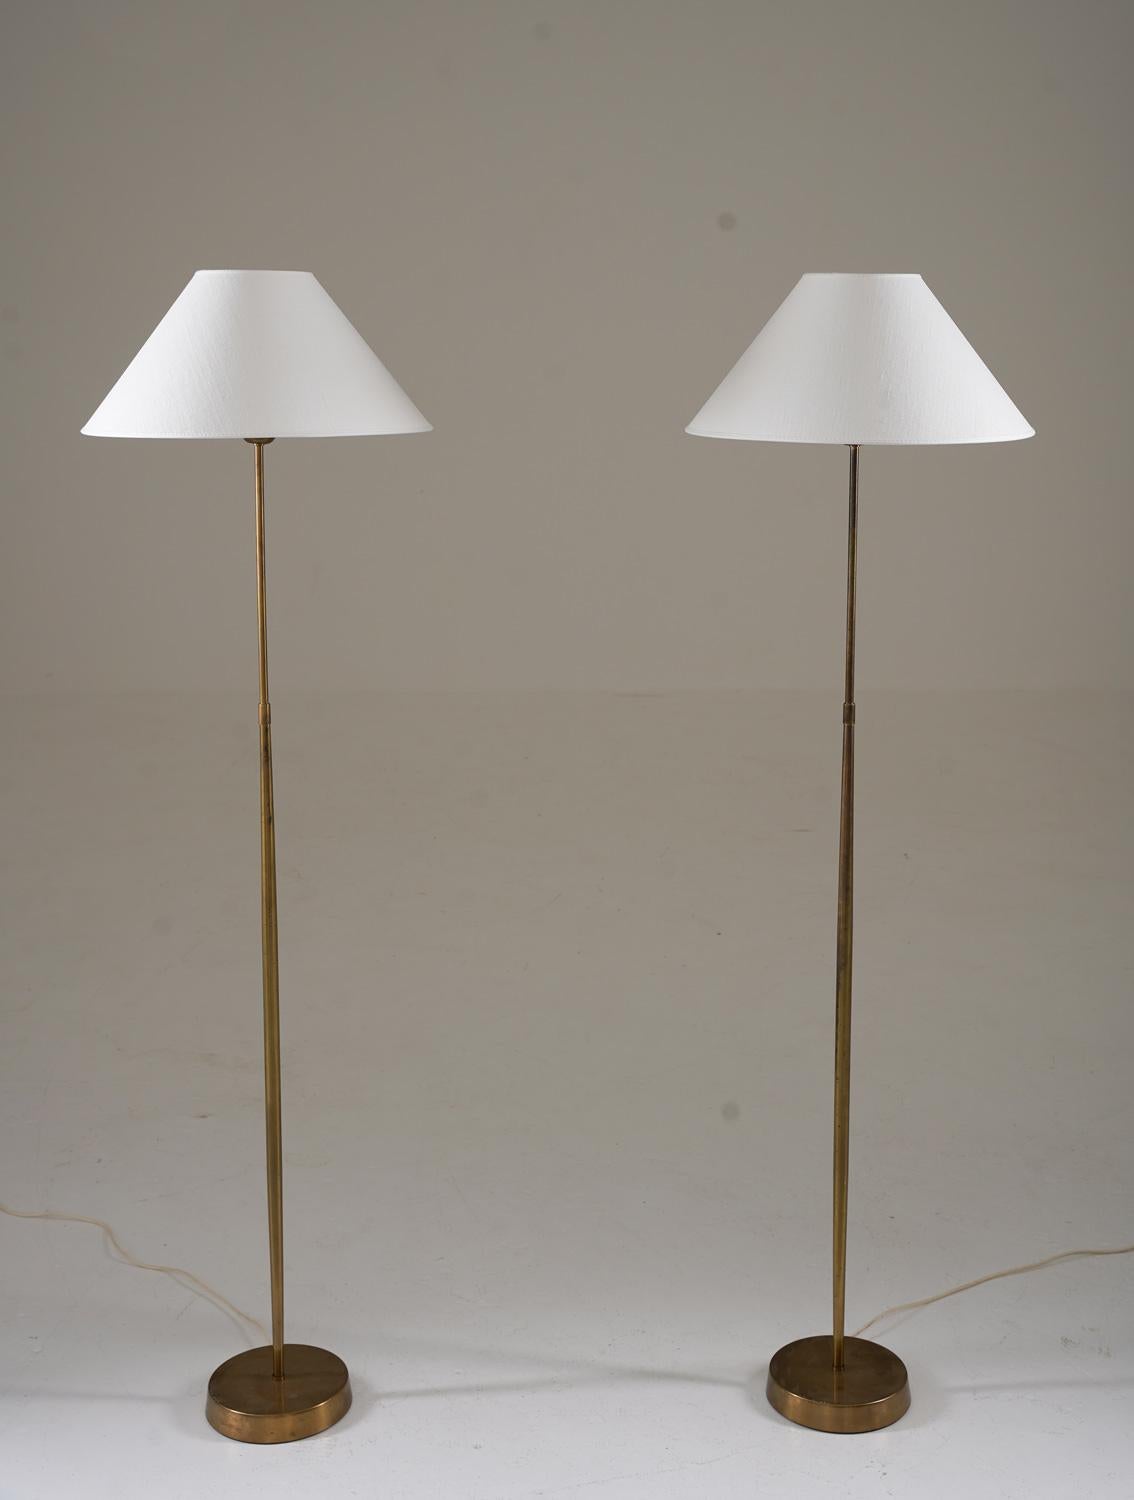 Paar Stehlampen von ASEA, Schweden, 1950er Jahre.
Schöne Lampen mit einem minimalistischen Design, bei dem die leicht sanduhrförmigen Stäbe einen exklusiven Eindruck vermitteln.

Zustand: Guter Originalzustand mit einigen leichten Dellen am Sockel